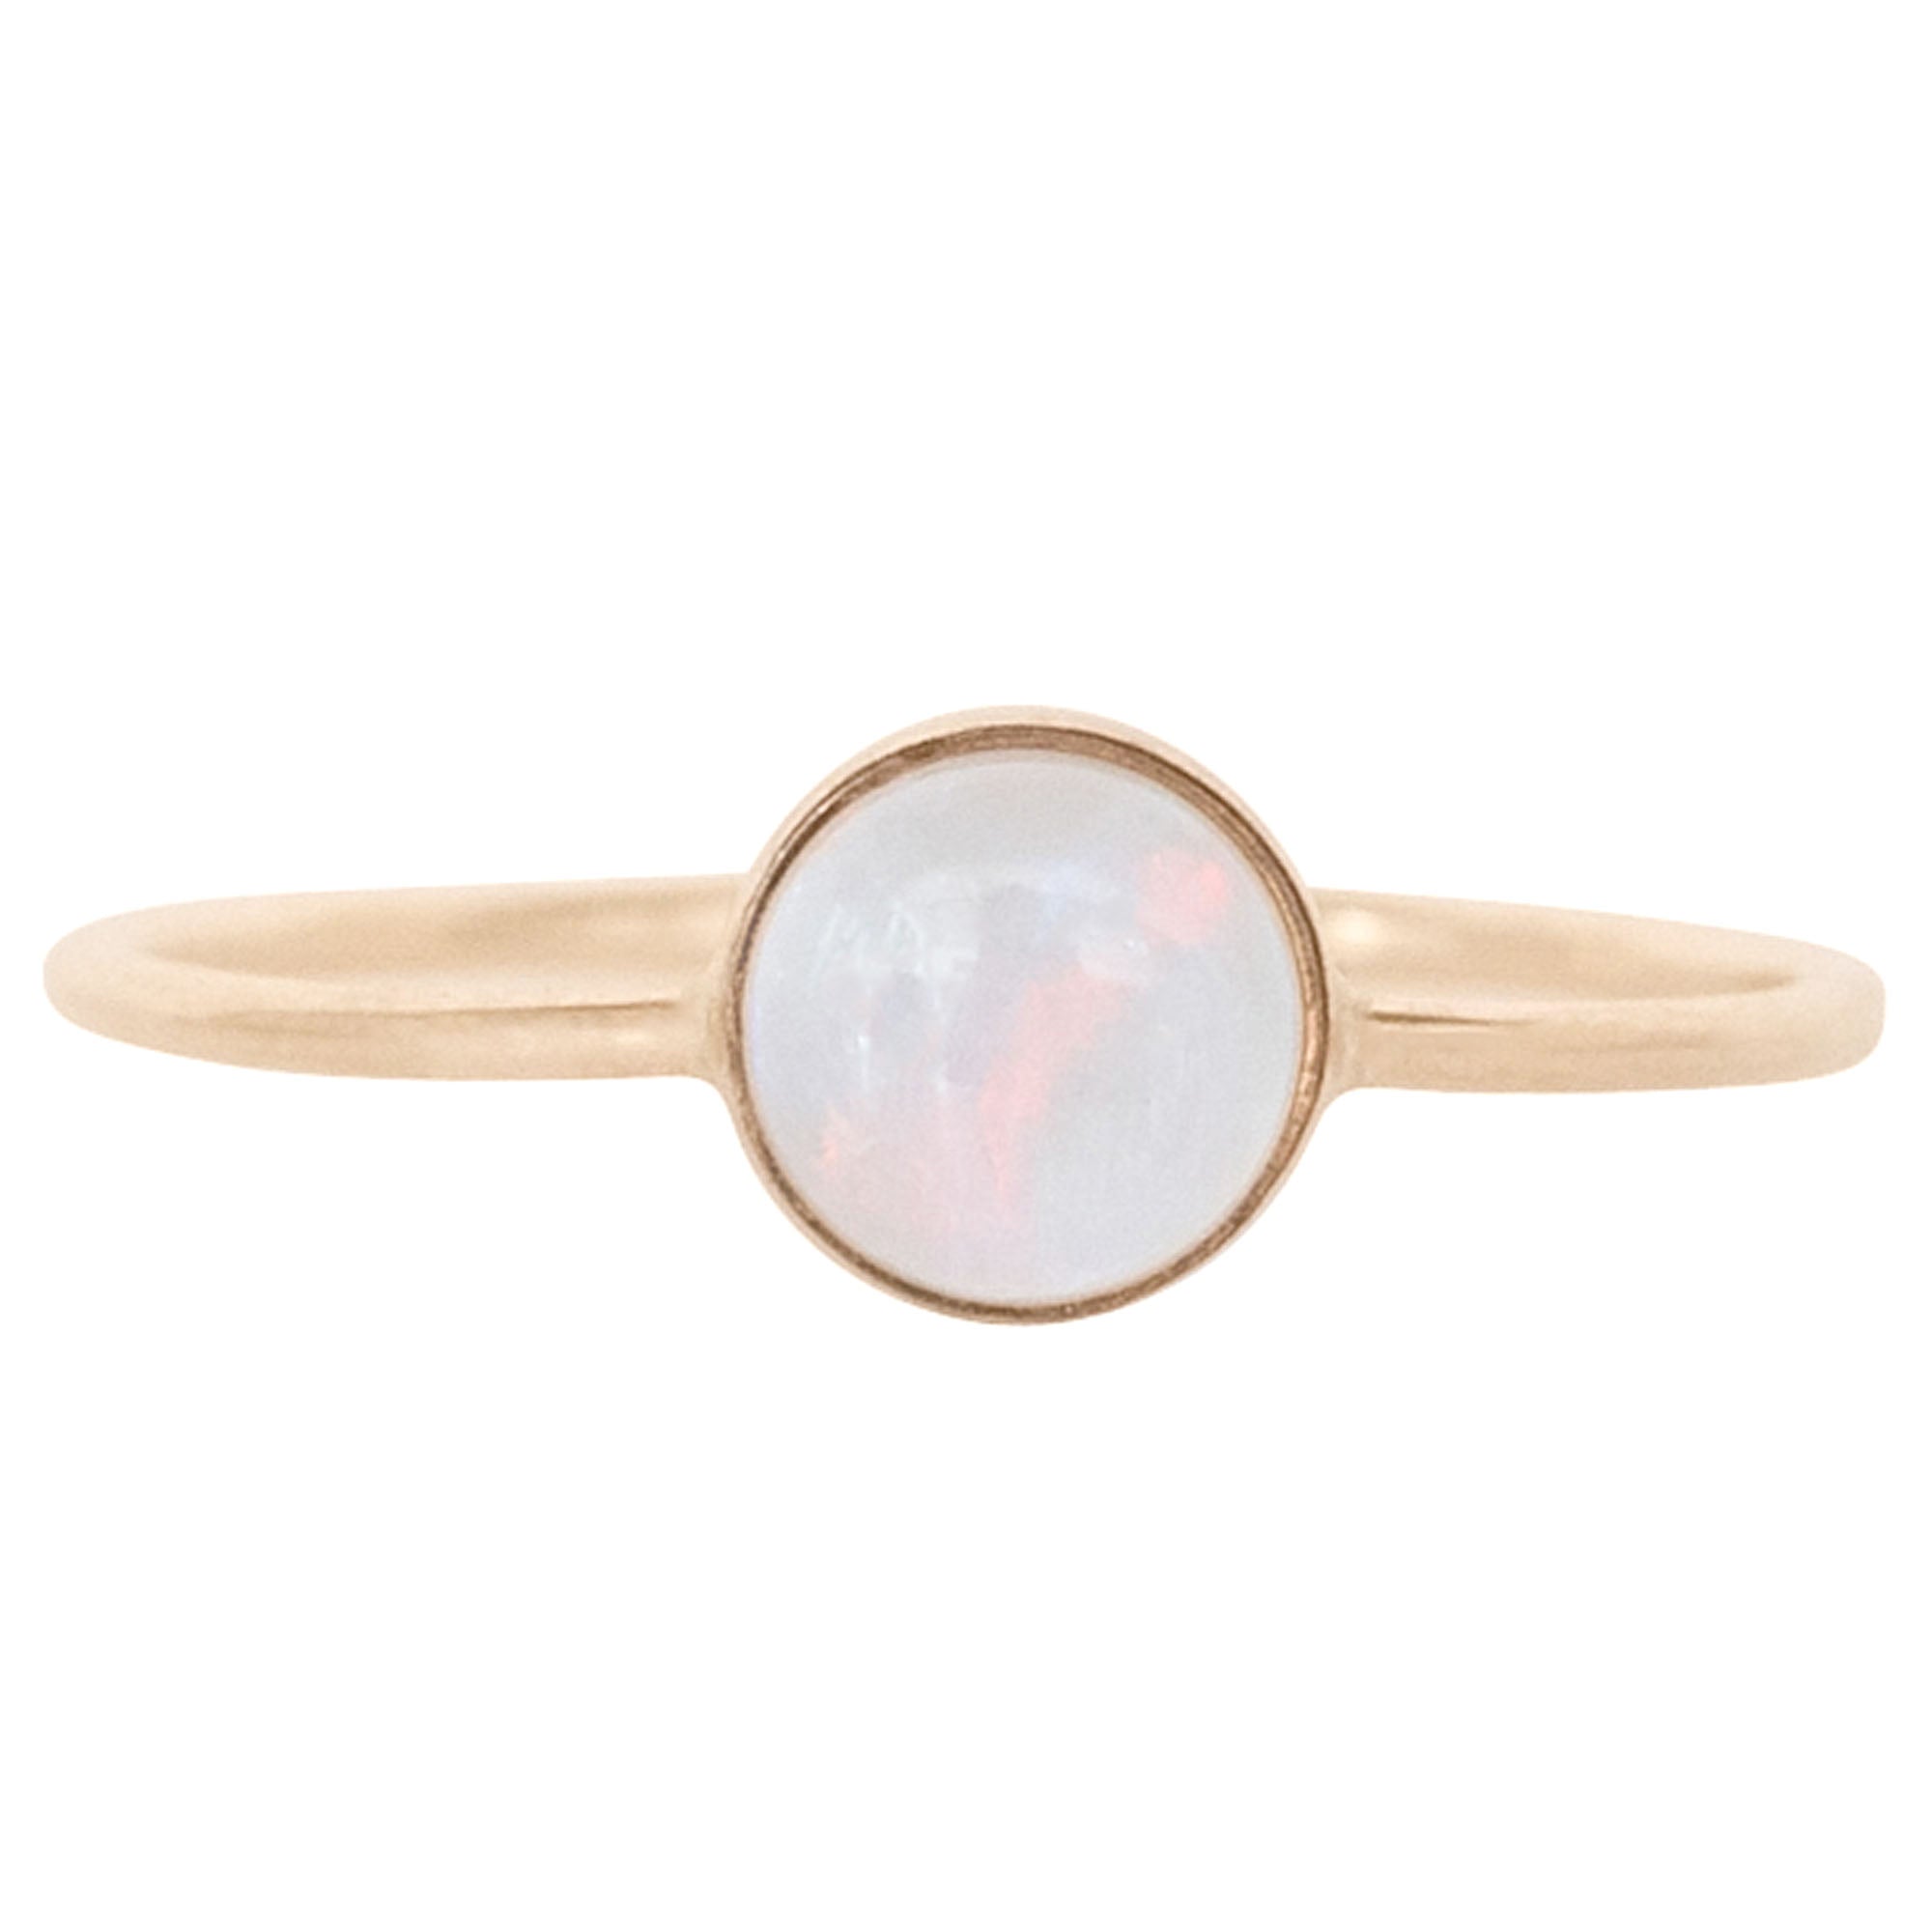 Opal Gumdrop Ring - Favor Jewelry